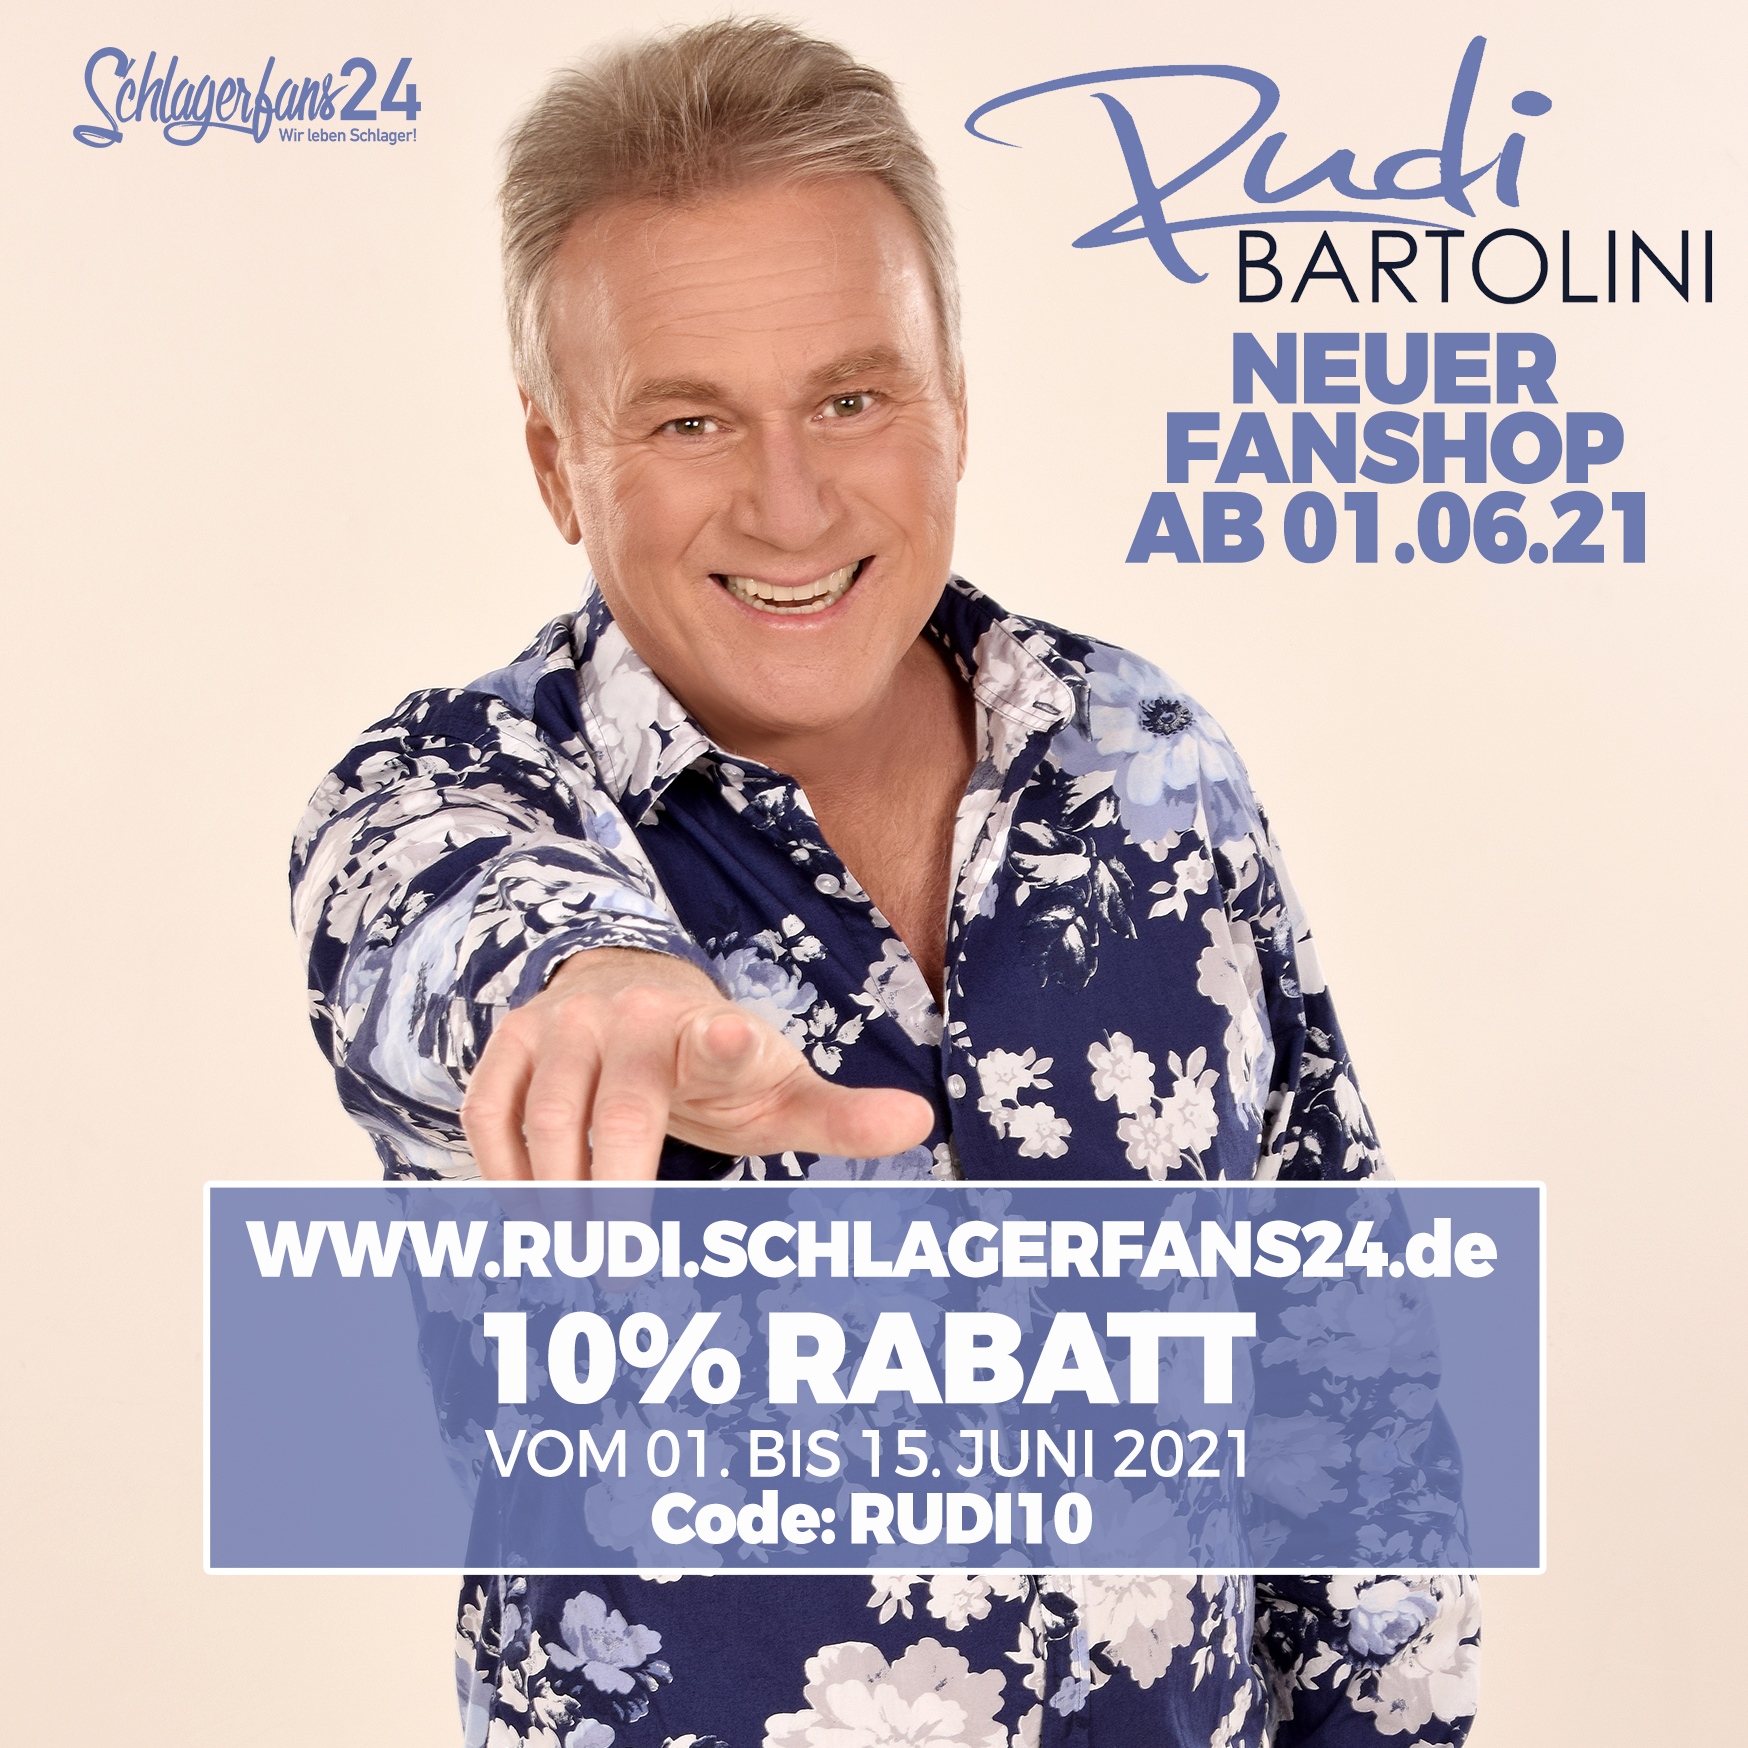 Rudi Bartolini - Offizieller Fanshop (wir-leben-schlager.de)